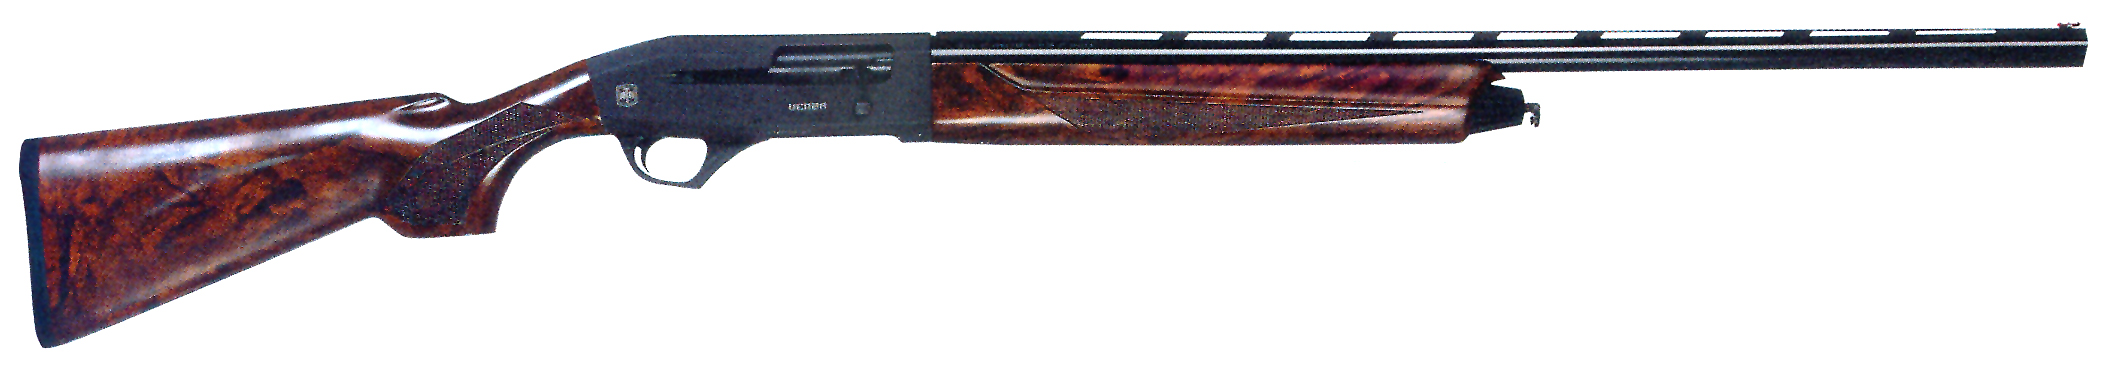 Гладкоствольное ружье ATA ARMS Moд. VENZA WALNUT BLACK FONEX (полуавтоматическое)